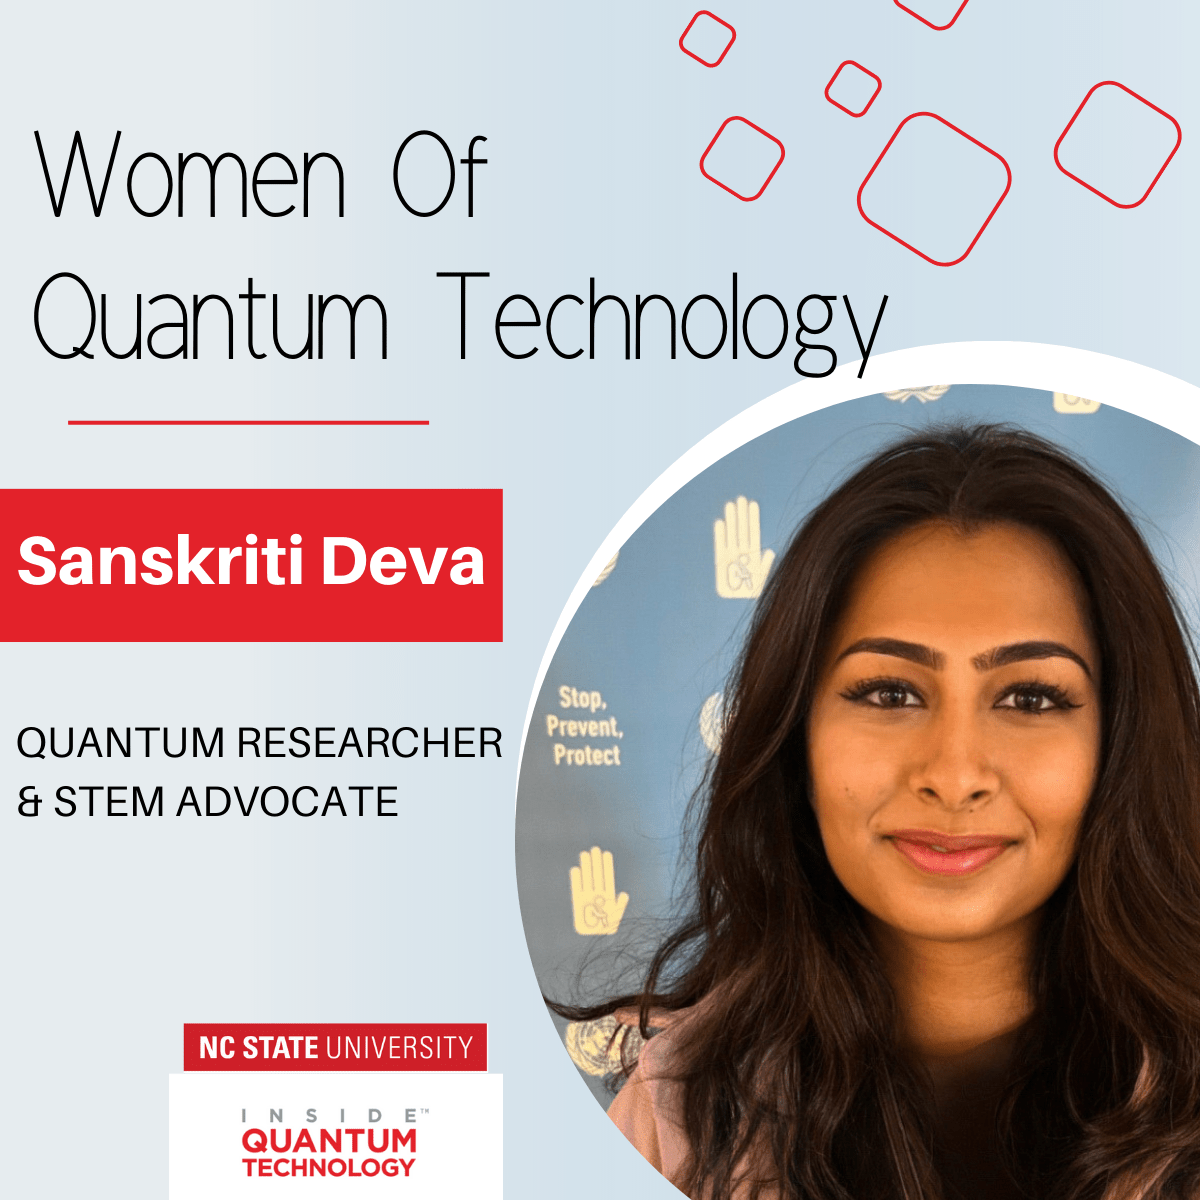 양자 여성: Sanskriti Deva, 양자 엔지니어이자 최연소 UN 대표 선출 - Inside Quantum Technology